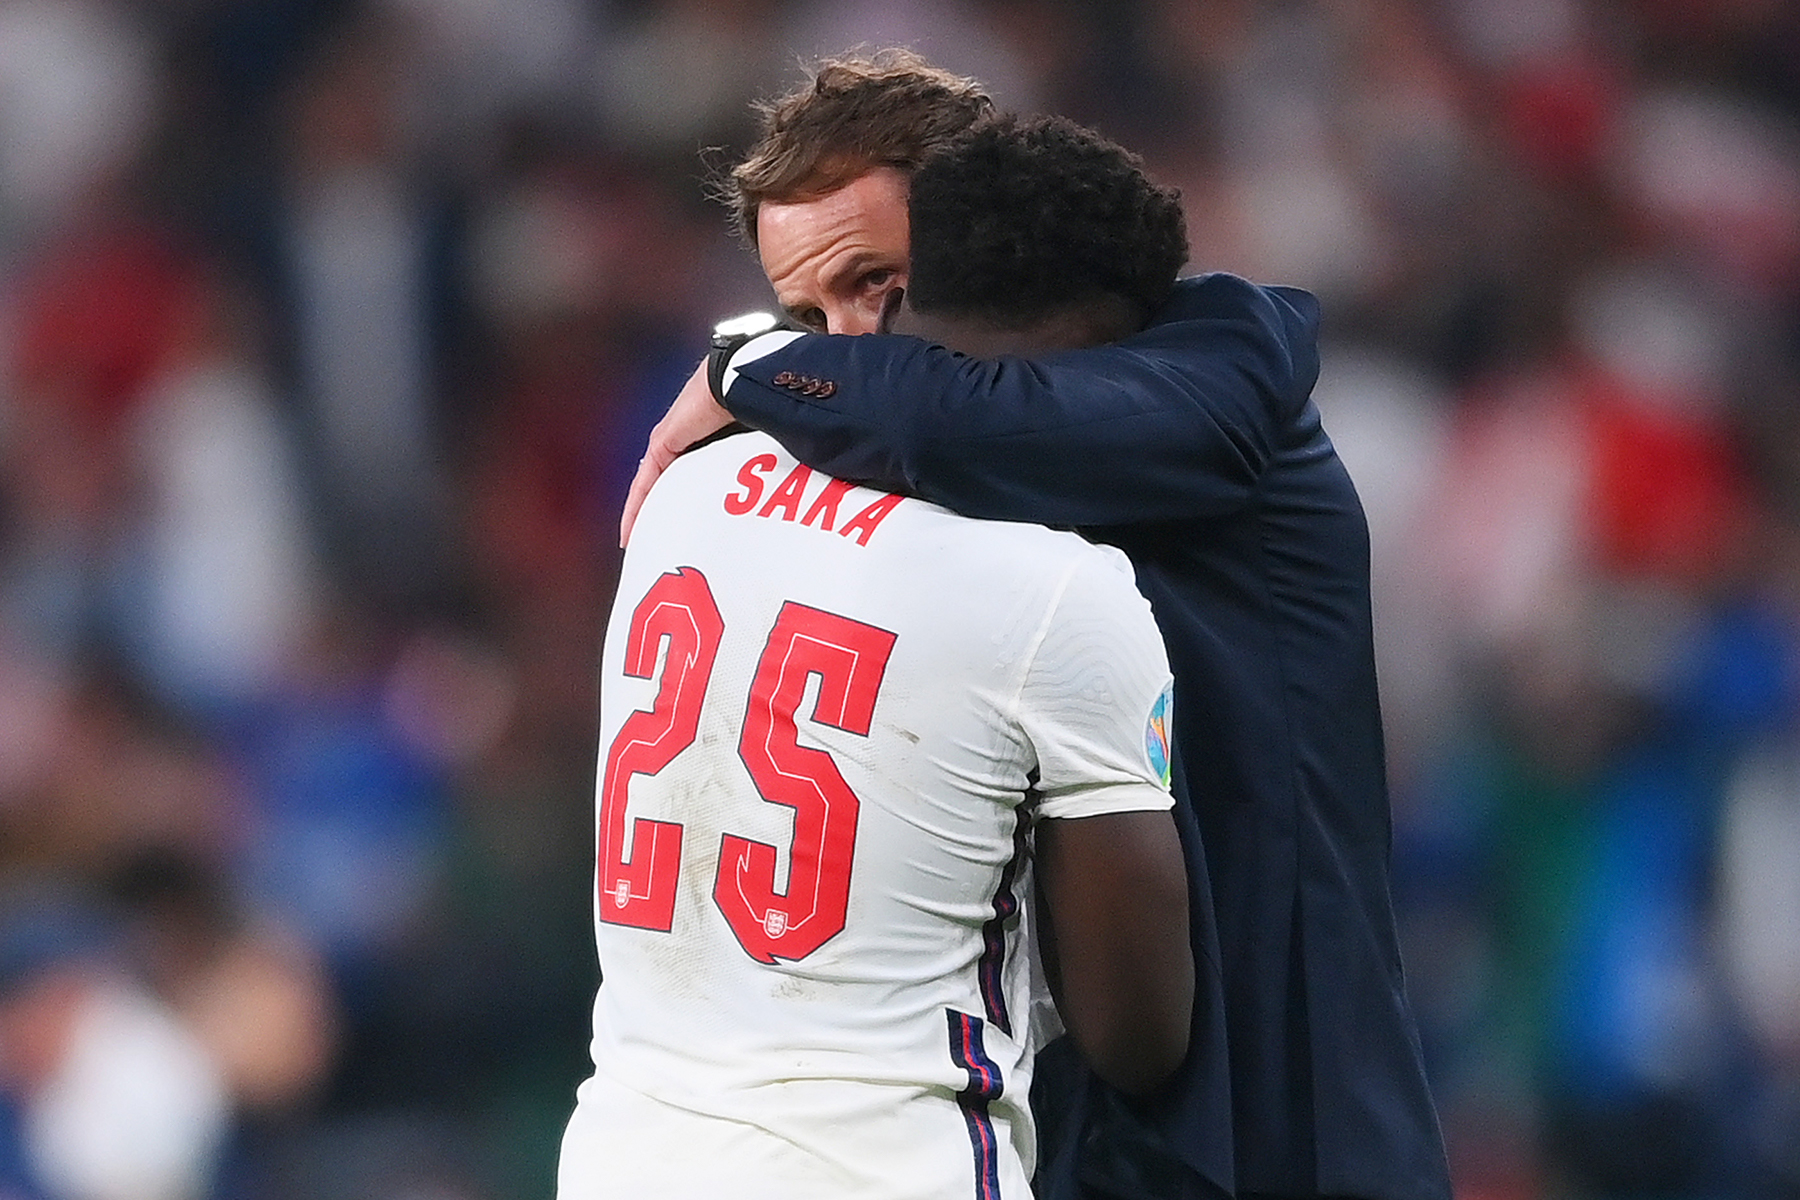 A photograph of Gareth Southgate consoling Bukayo Saka after the Euro 2020 final